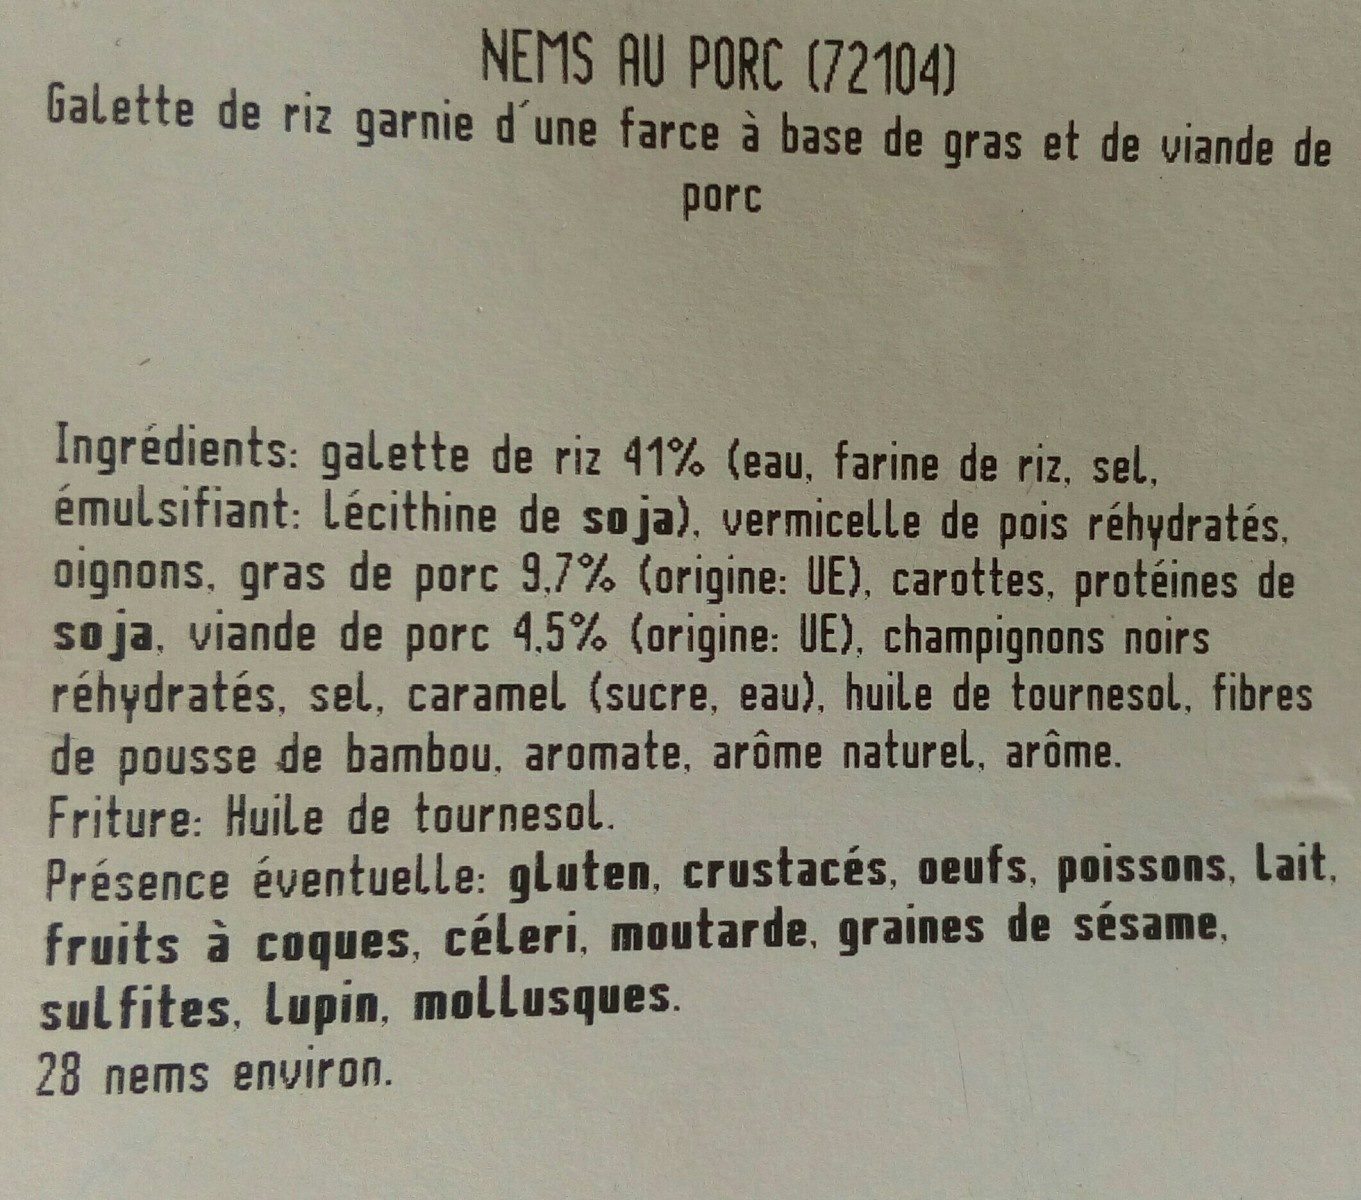 Mini nems au porc - Ingredients - fr